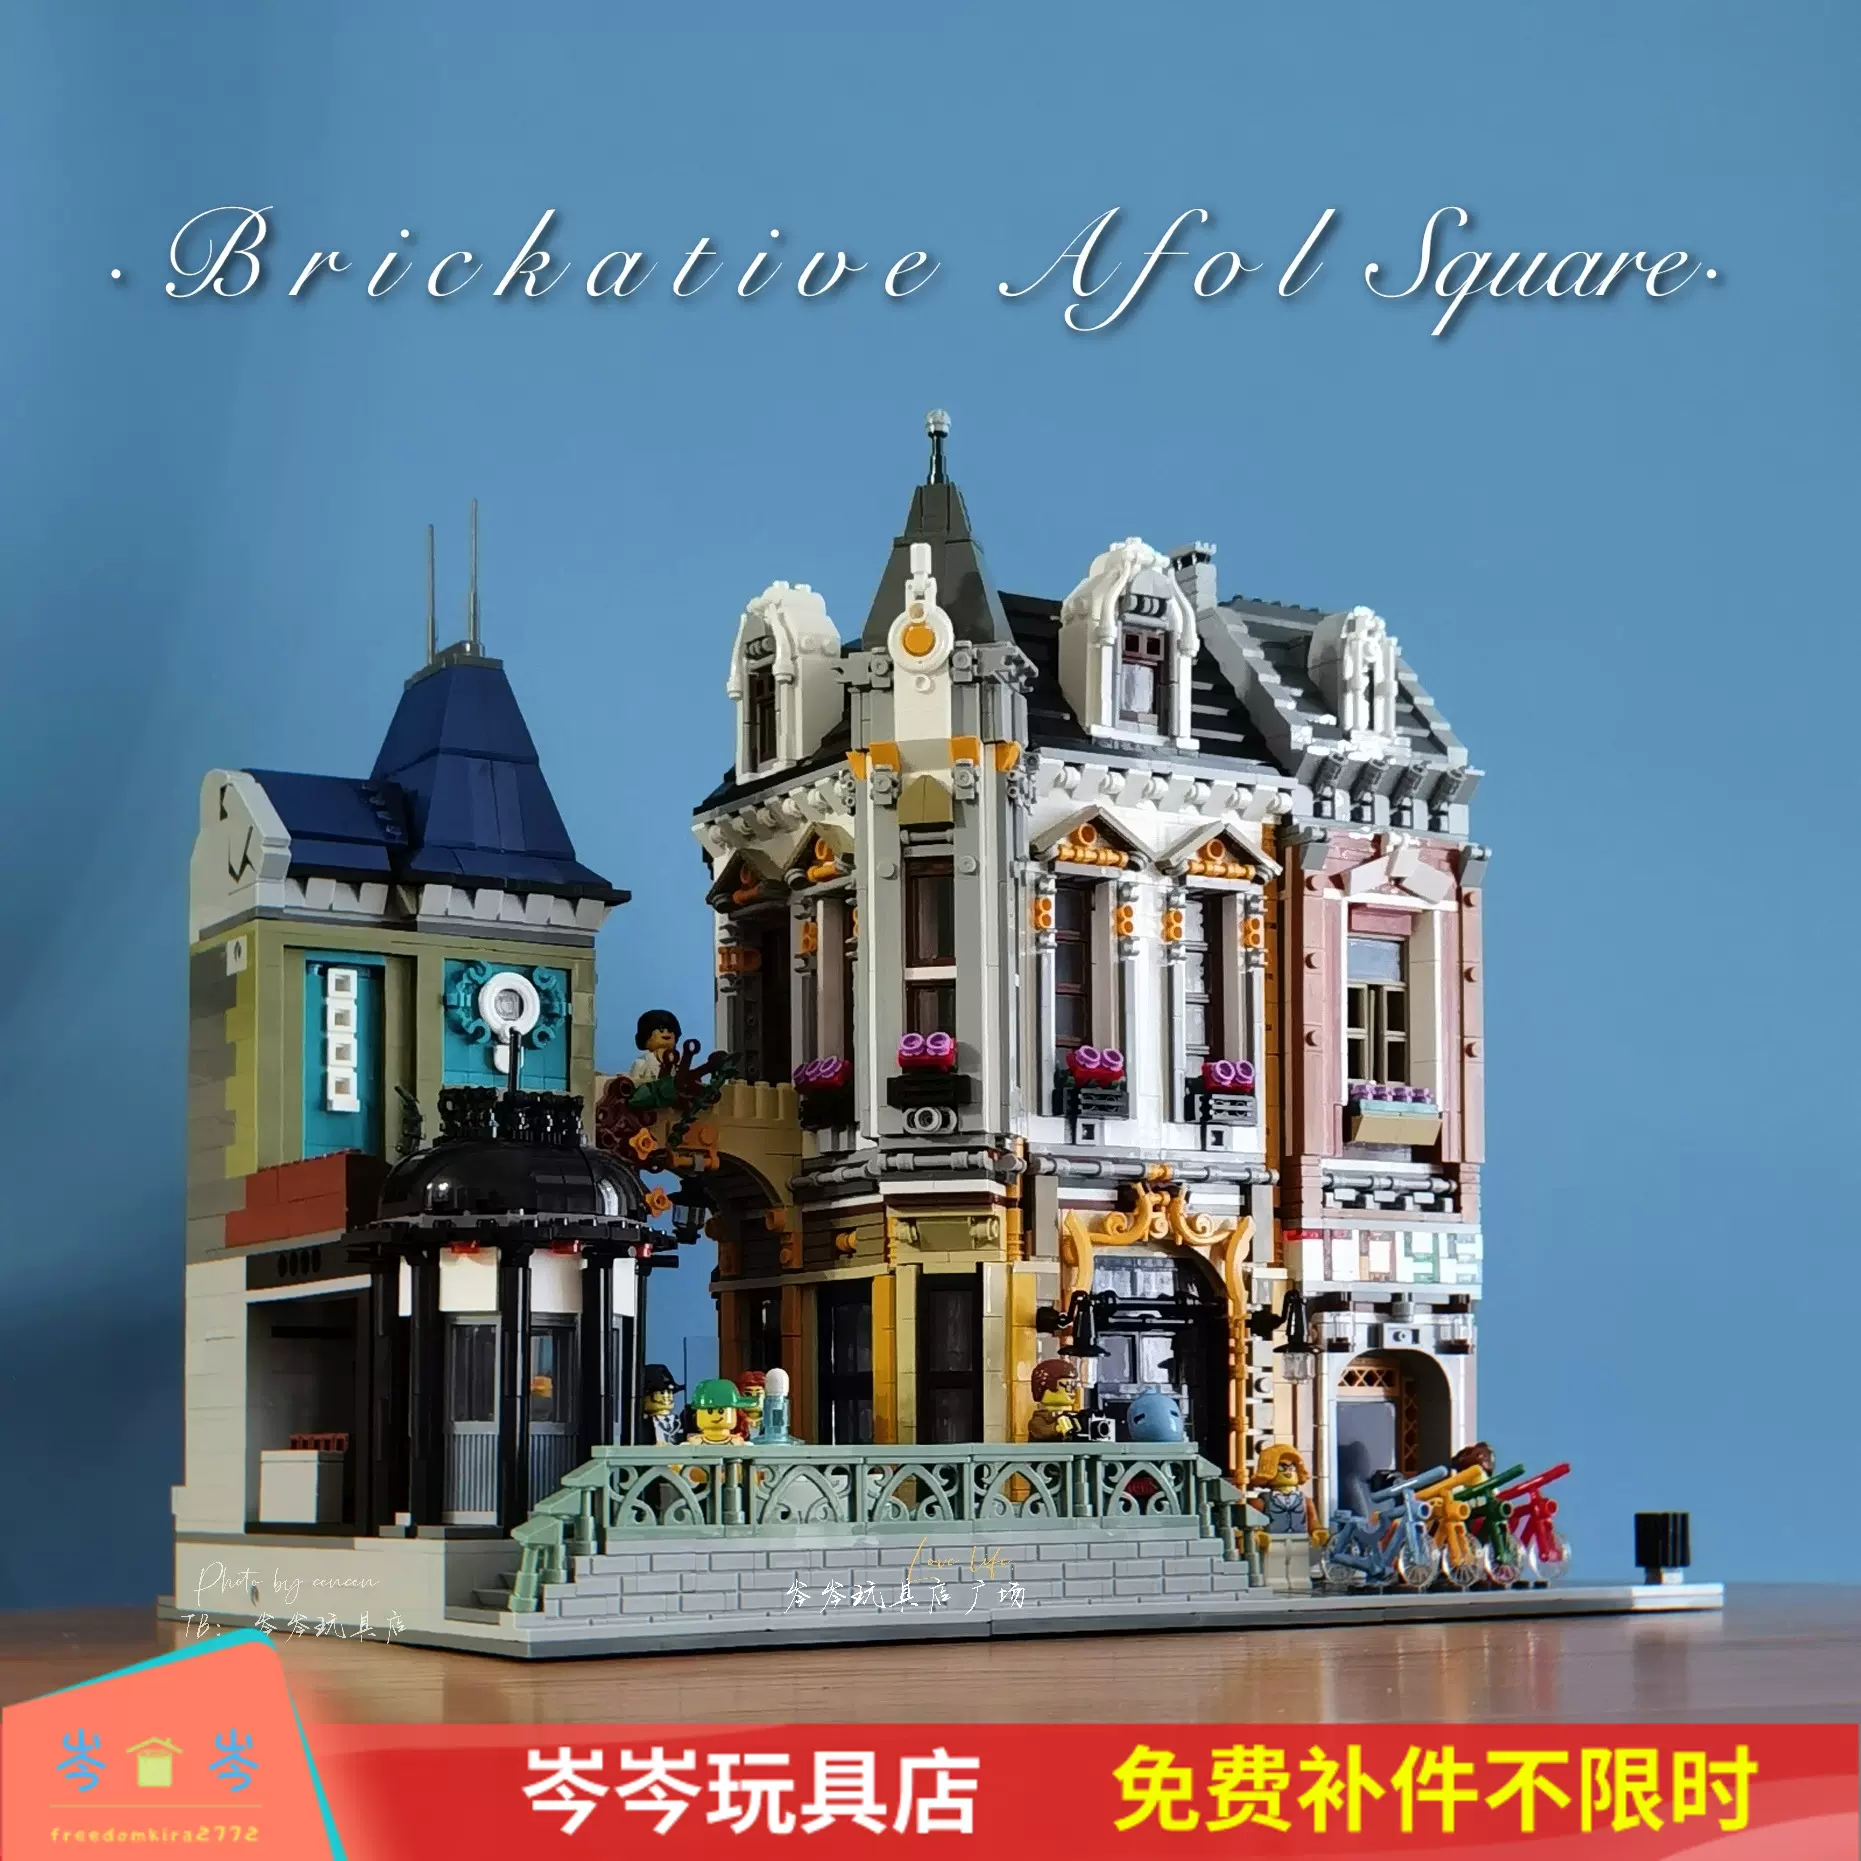 杰星MOC街景brickative玩具店广场AFOL Square构建拼装积木89112-Taobao